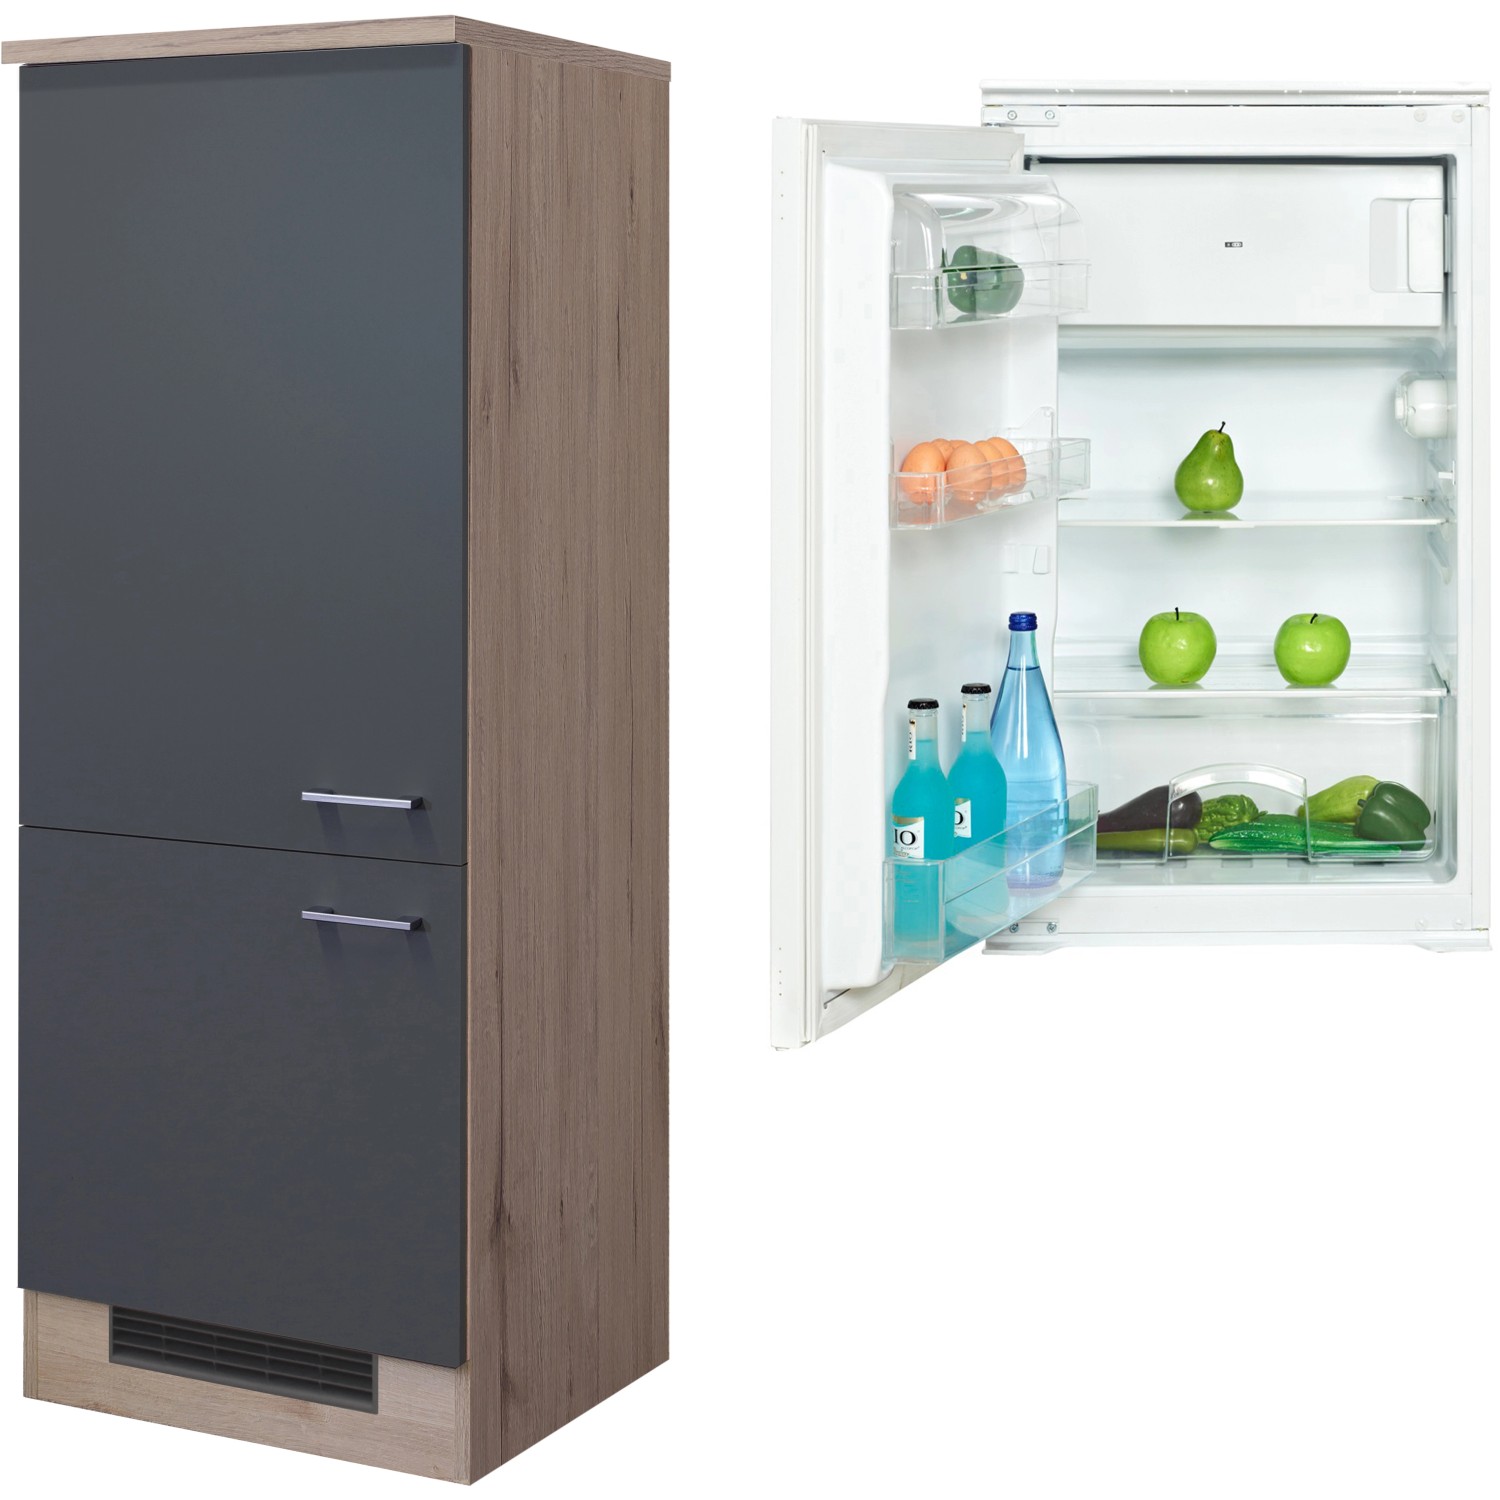 Flex-Well Exclusiv Kühlschrank-Einbauschrank Morena Kühlschrank kaufen F bei EEK: mit OBI